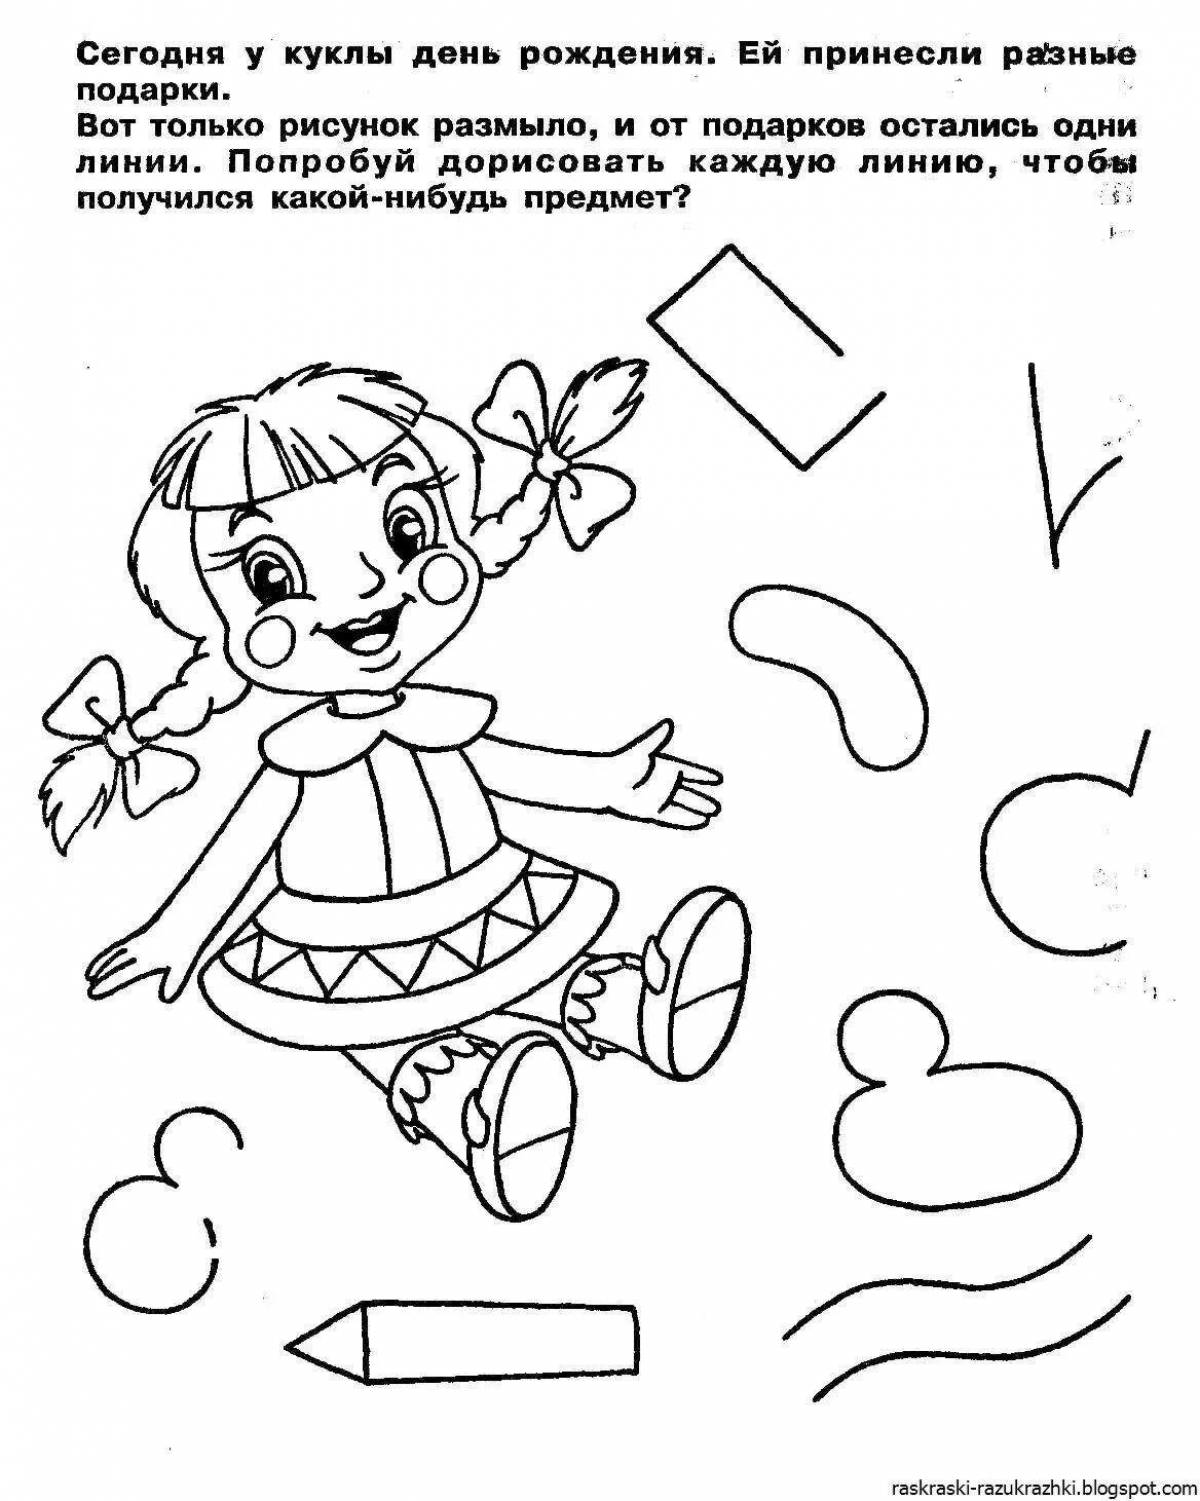 Креативная раскраска для детей познавательного возраста 4-5 лет